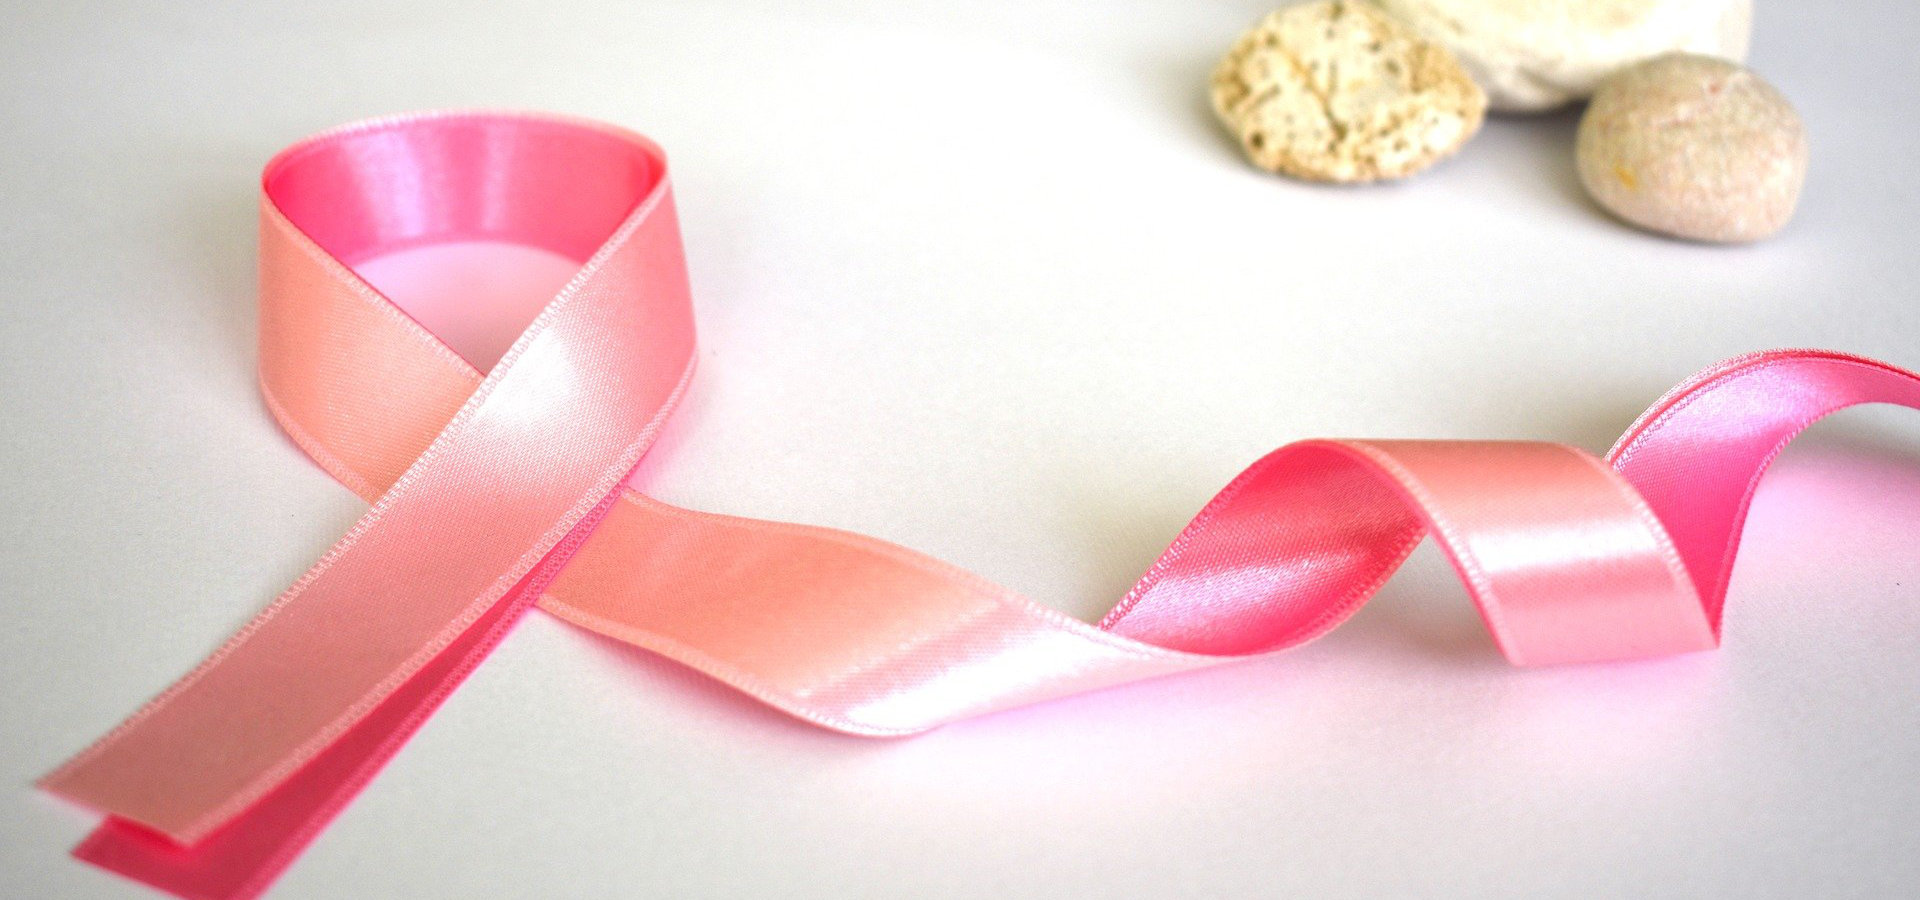 Estudo avaliou a evolução do desempenho cognitivo de doentes com cancro da mama